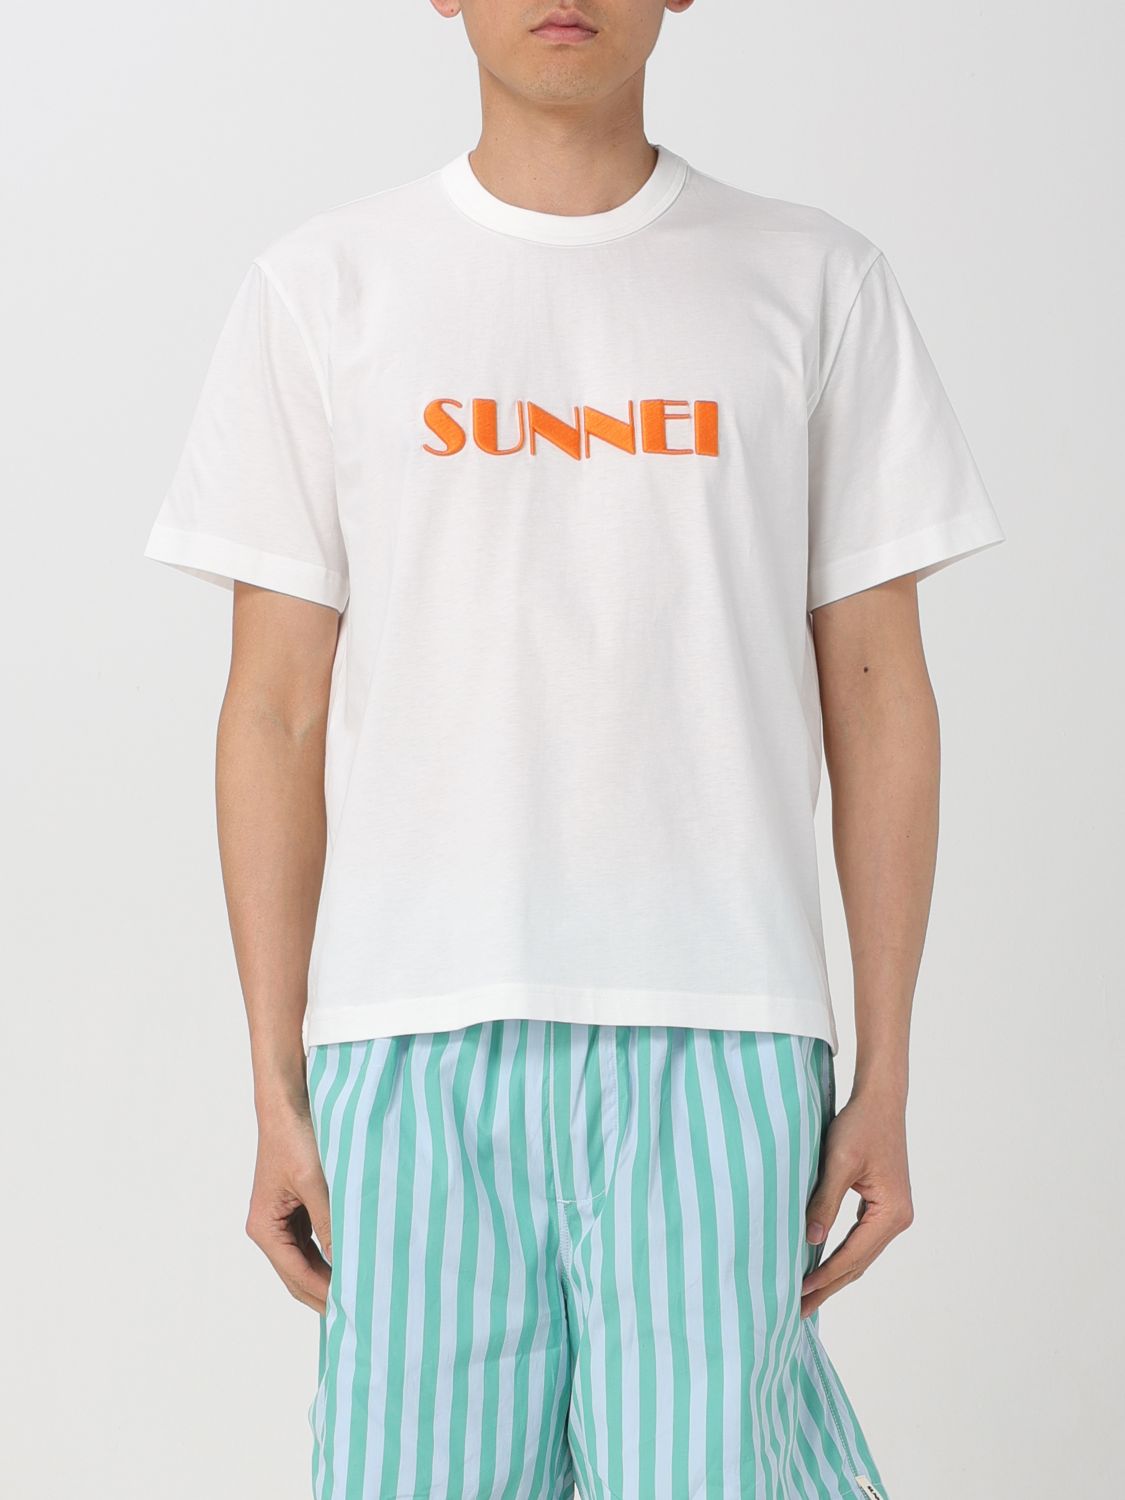 Sunnei T-shirt  Men Colour White